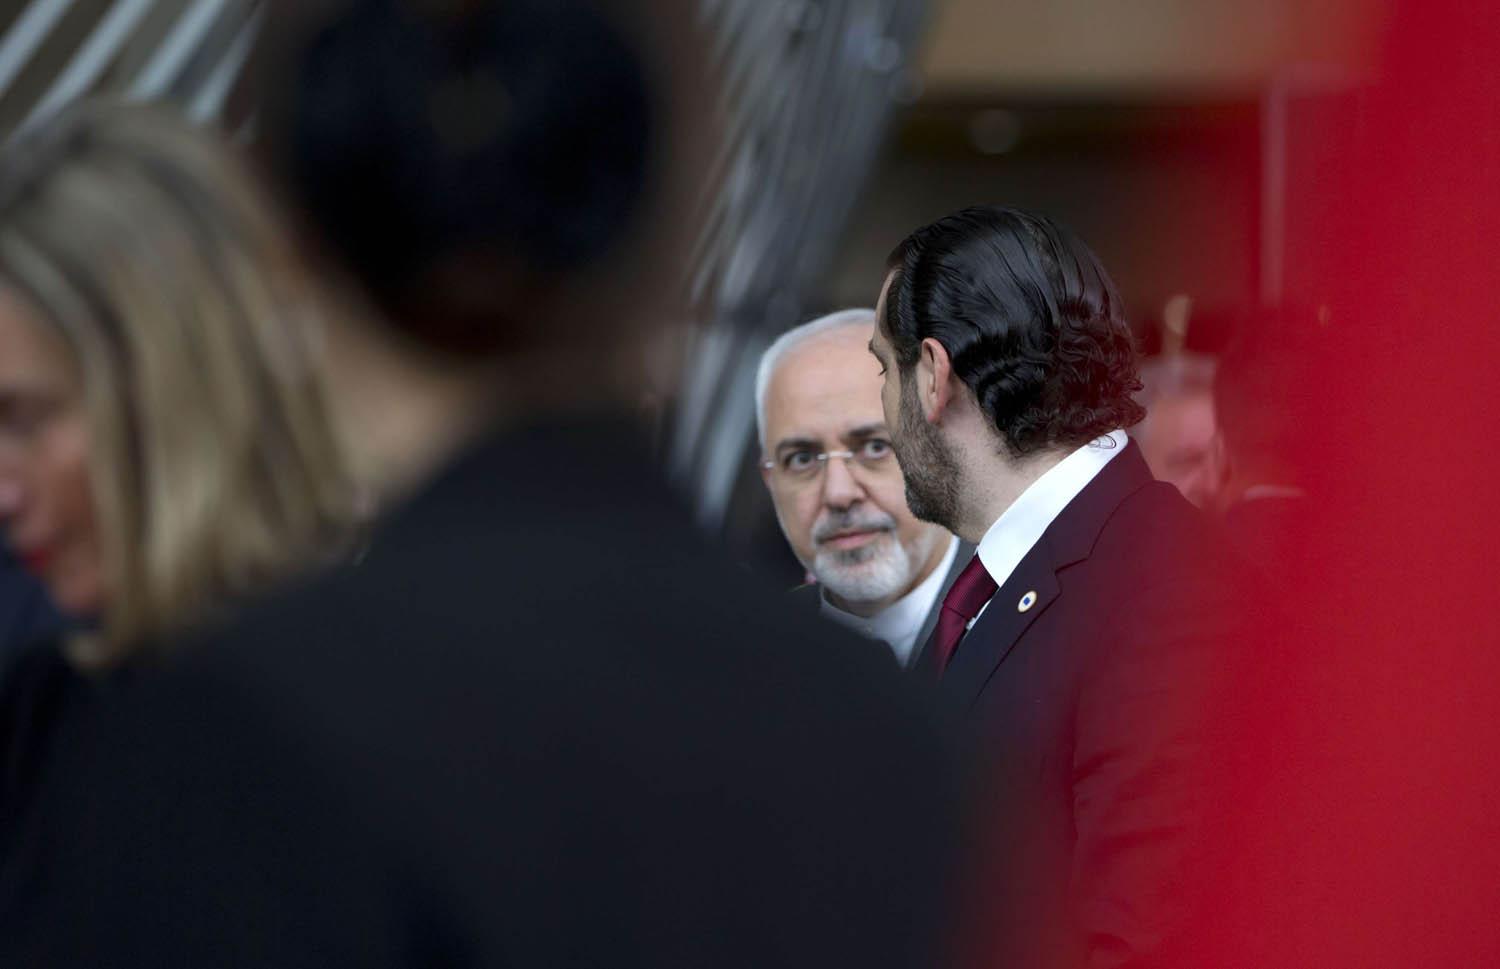 رئيس الوزراء اللبناني سعد الحريري ينظر إلى وزير الخارجية الإيراني محمد جواد ظريف في لقاء ببروكسيل